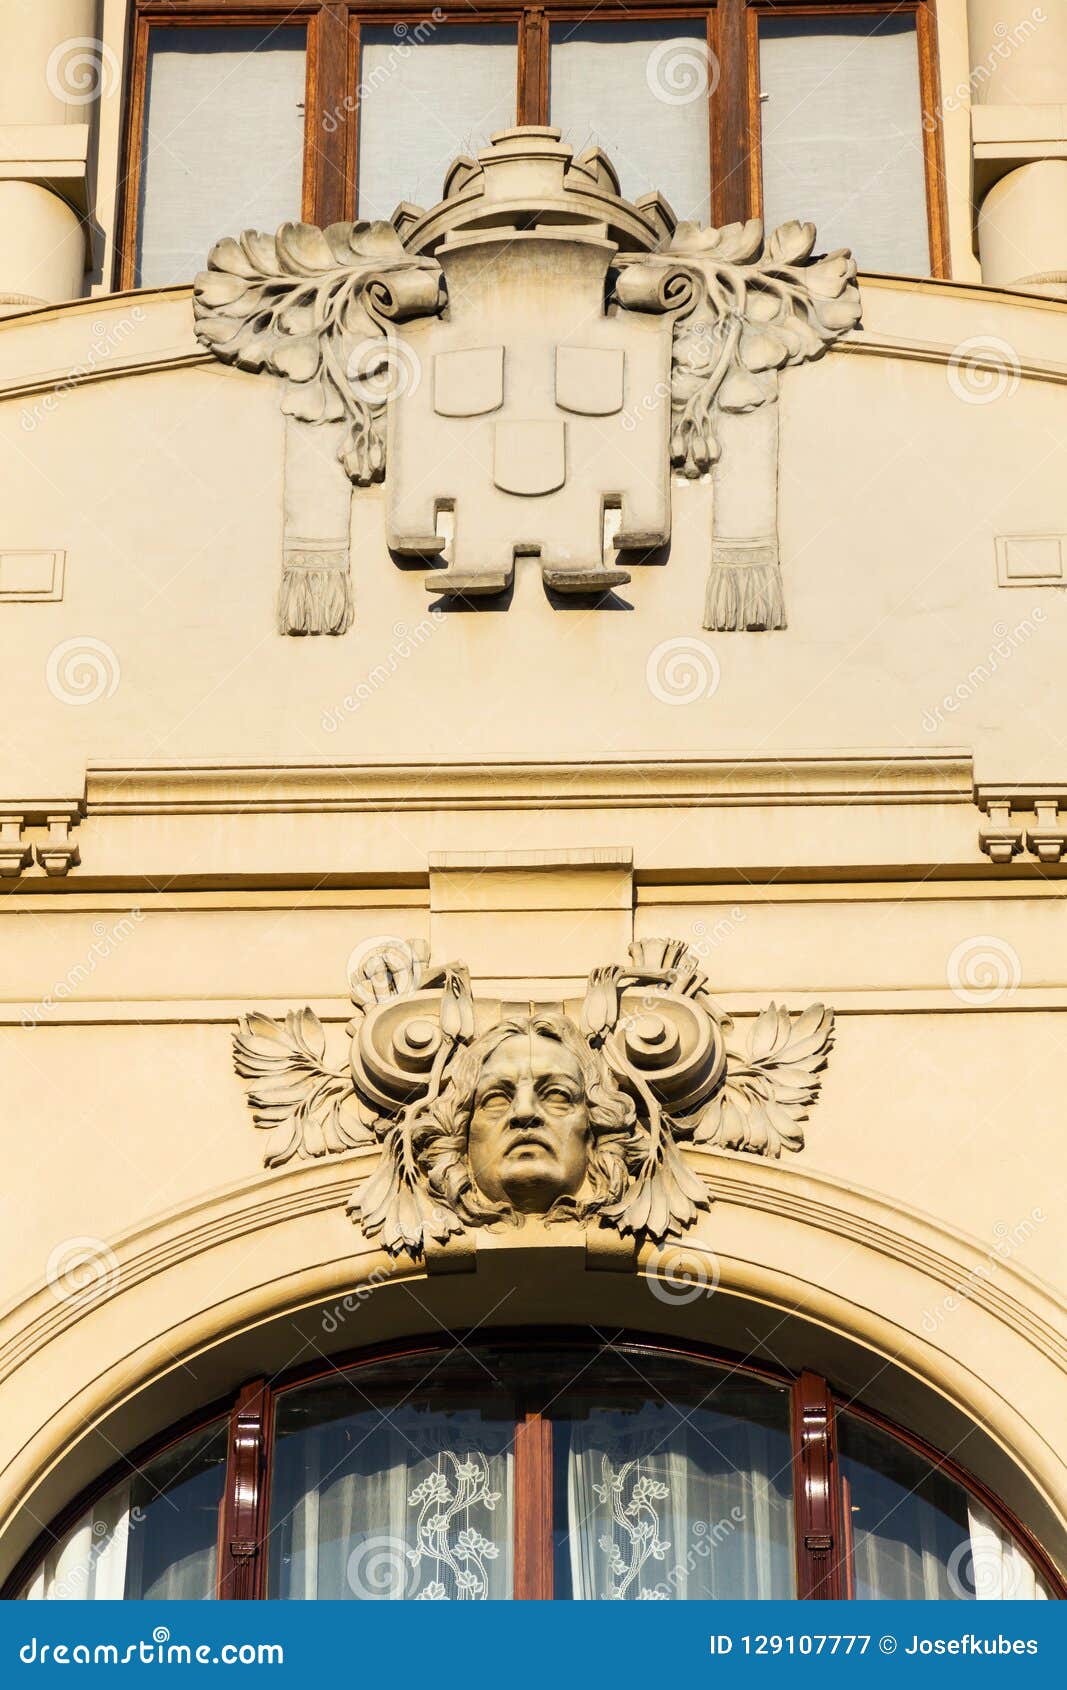 municipal house architectonic detail, art nouveau, prague, czech republic, sunny summer day